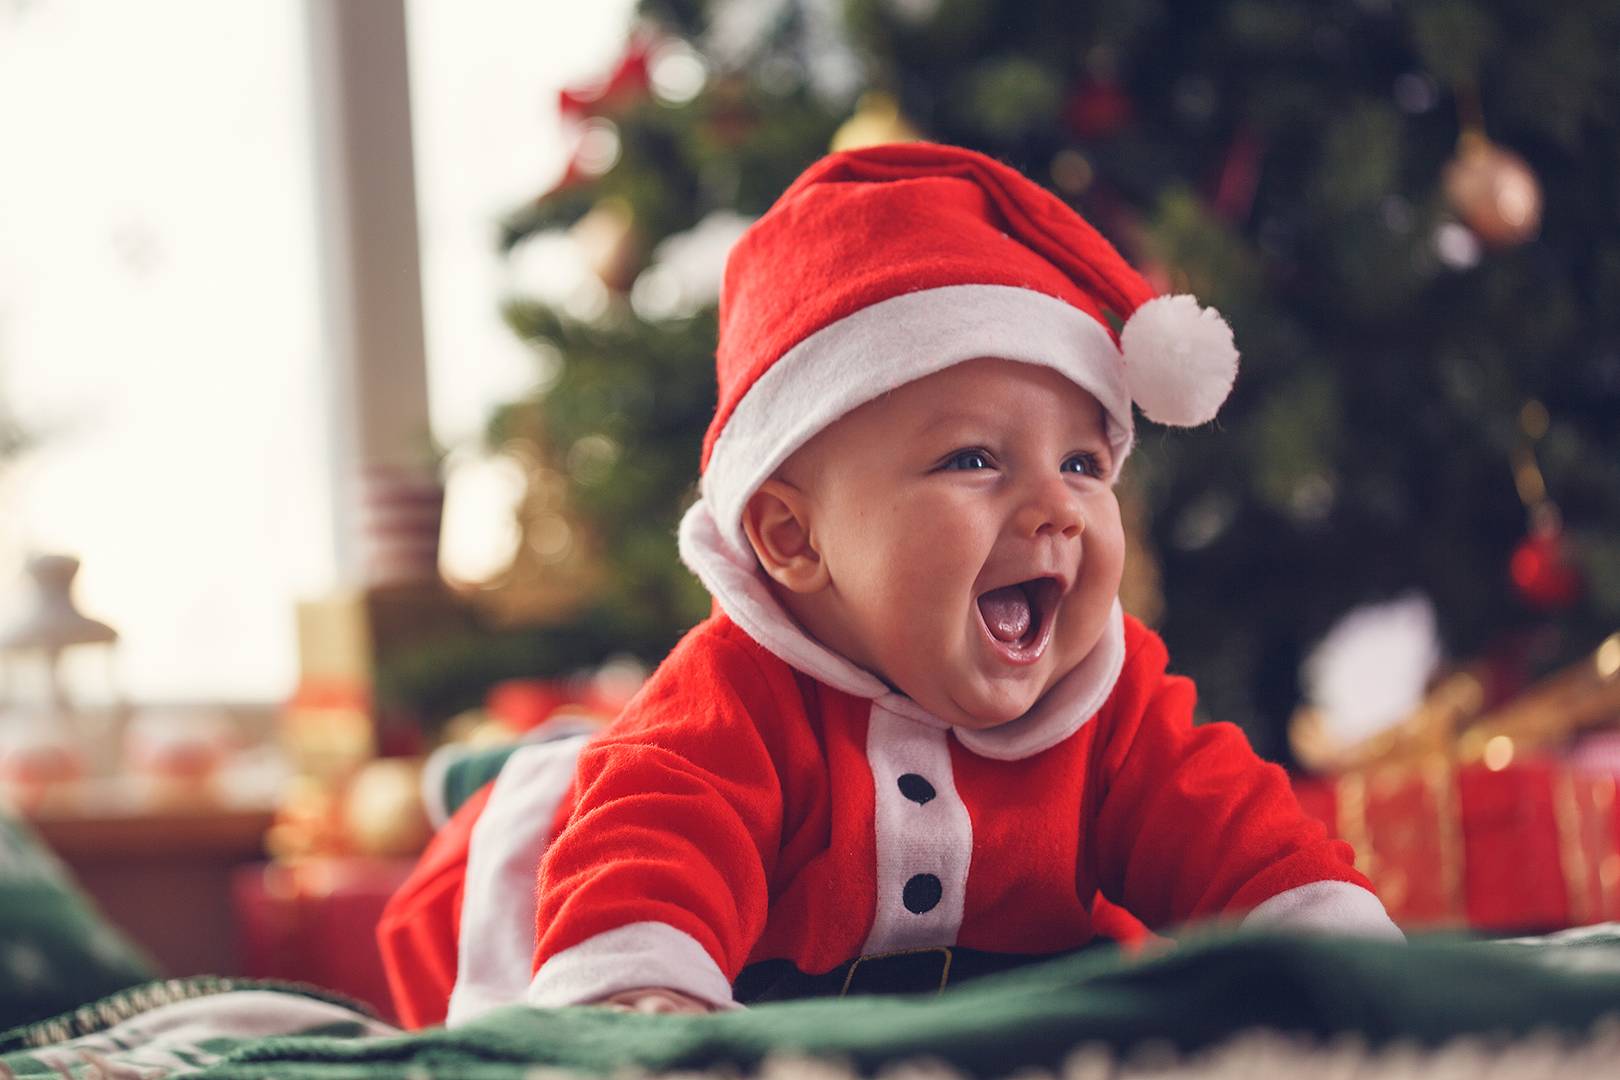 Le premier Noël avec votre enfant!